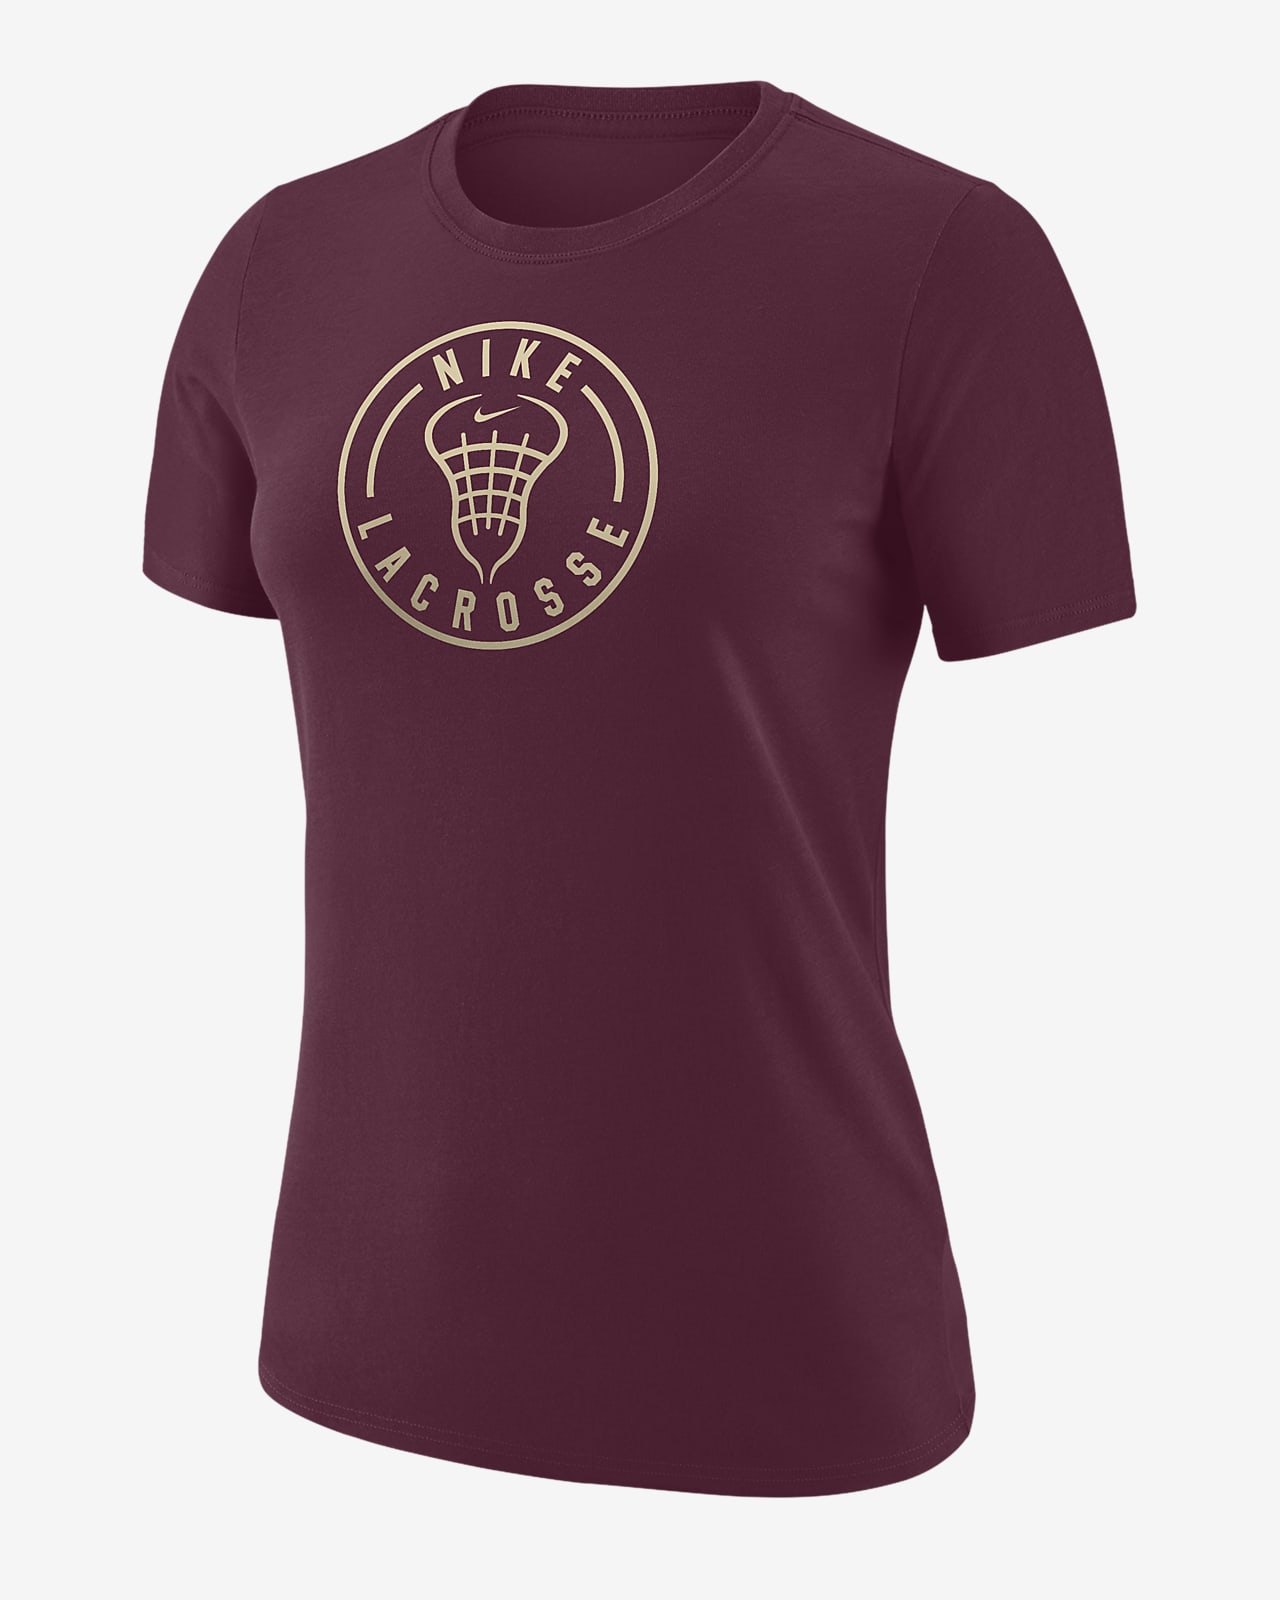 Nike Women's Lacrosse T-Shirt